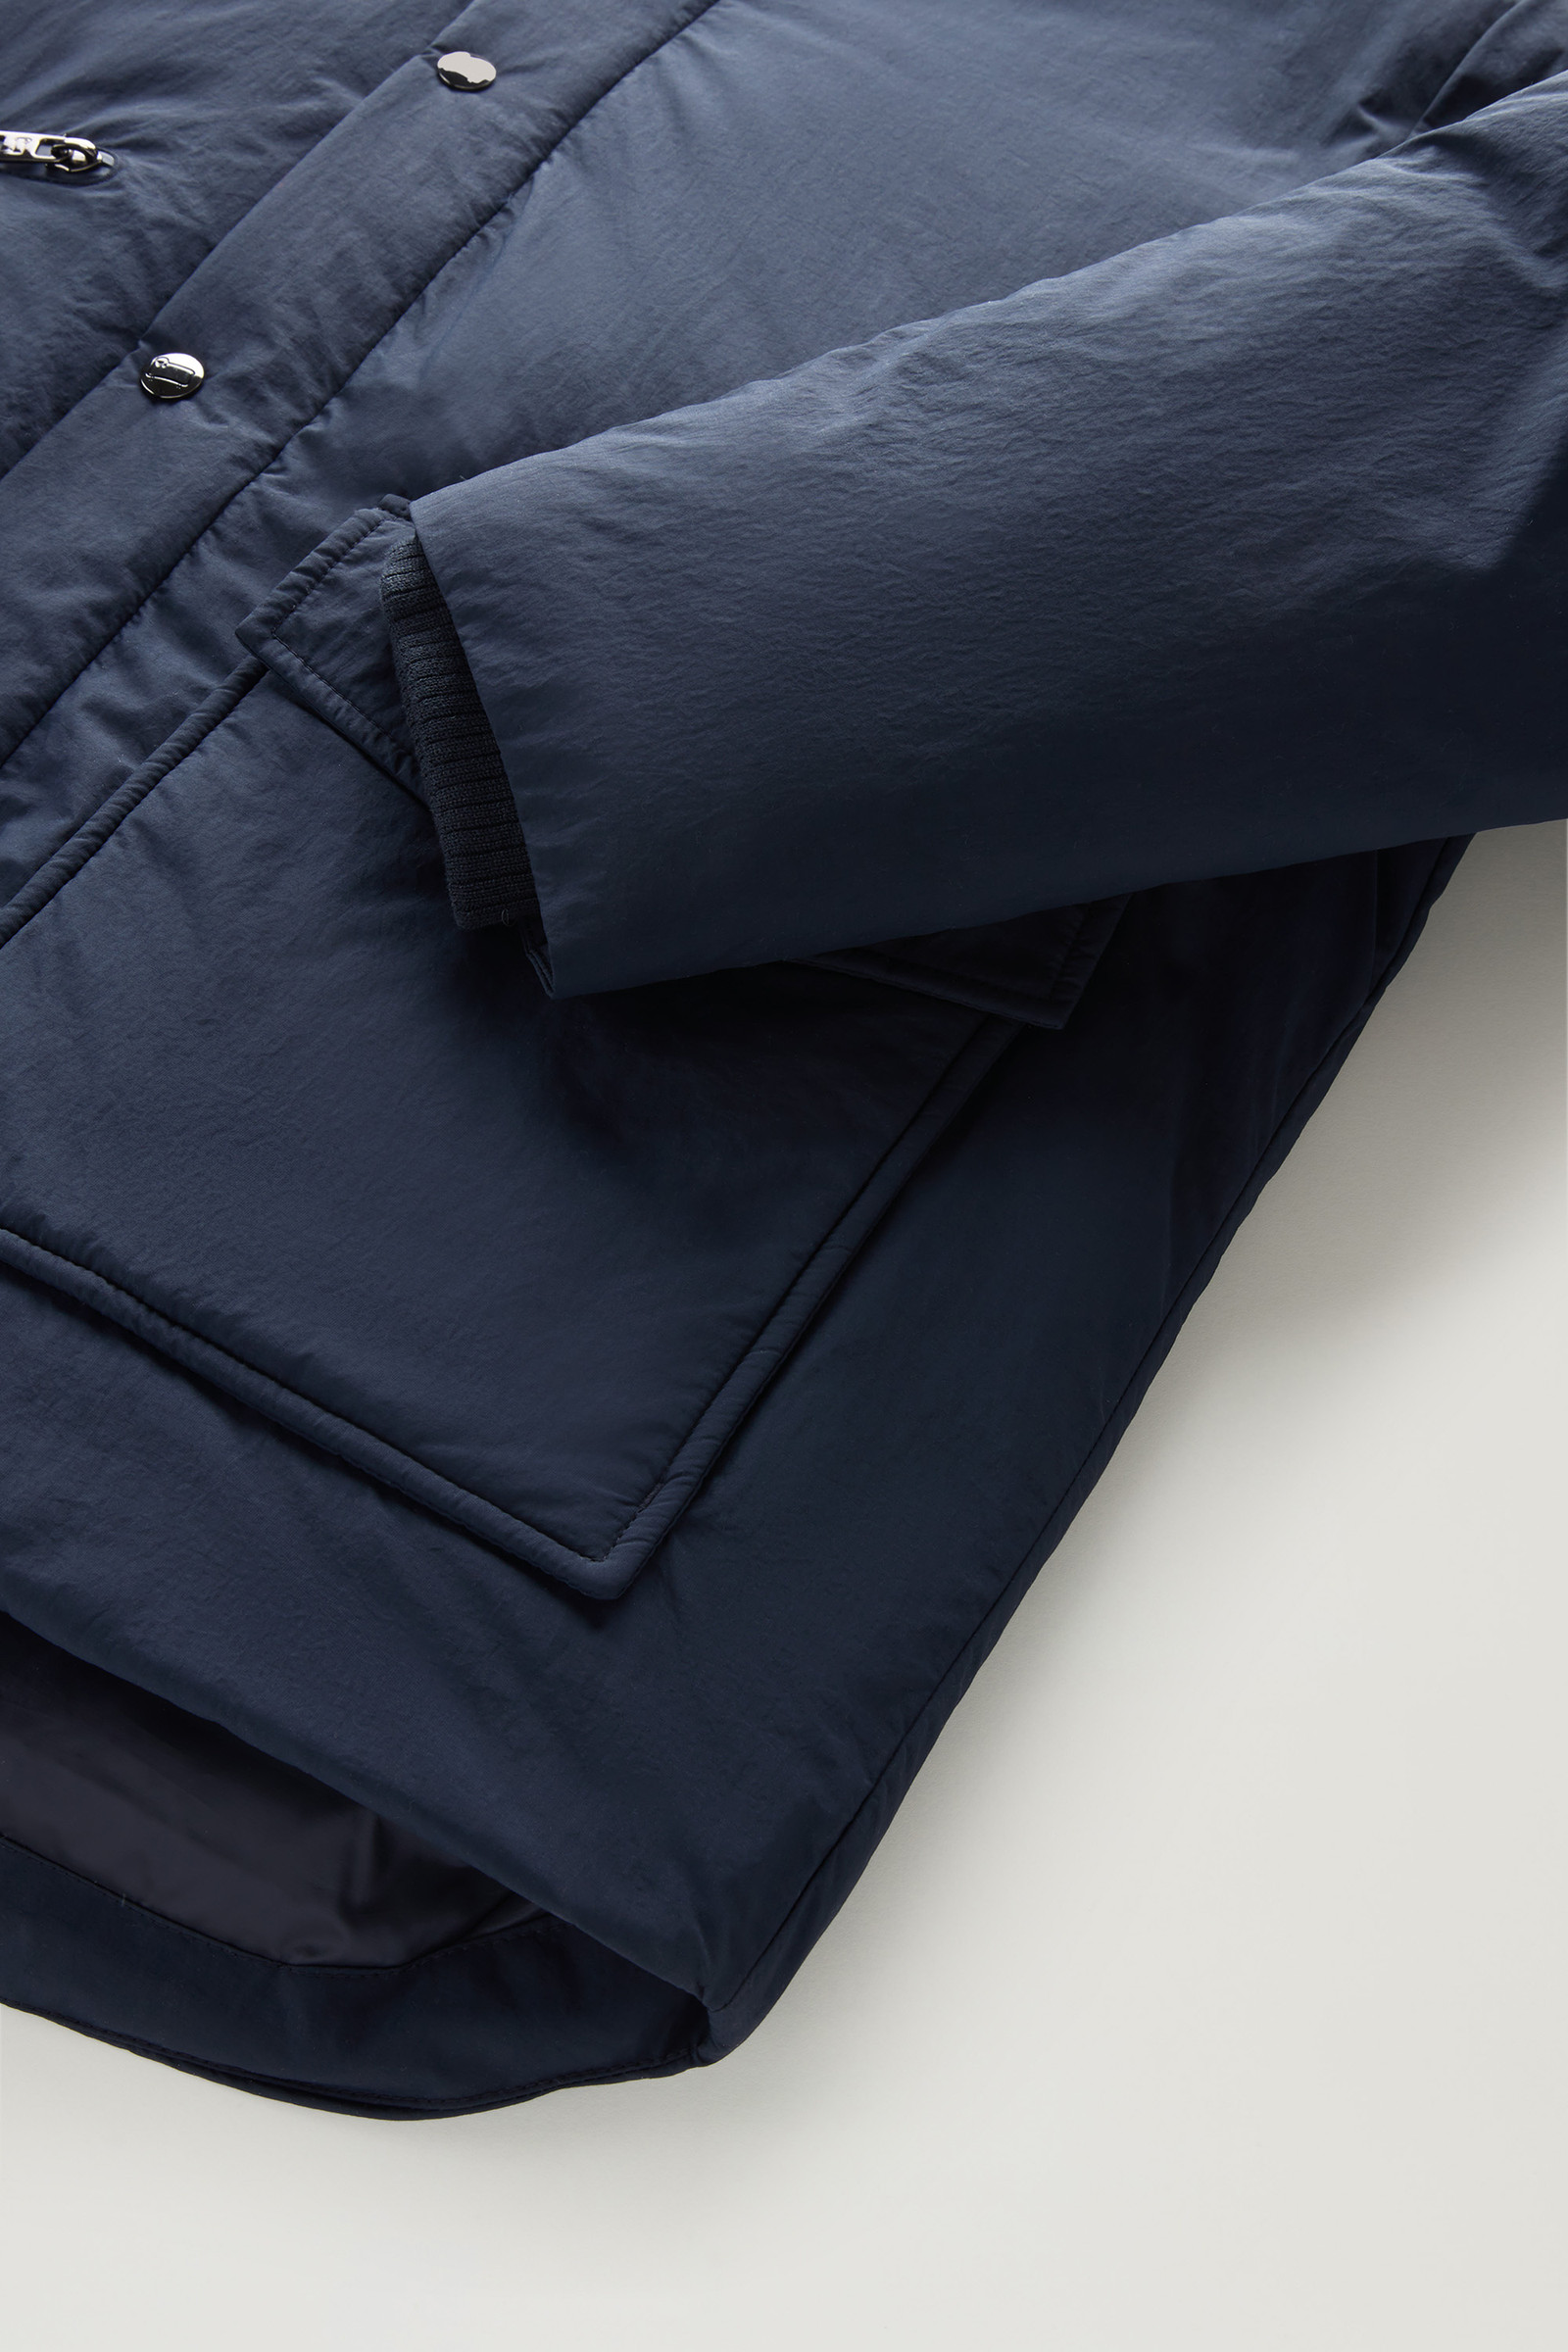 Aleutian Jacket in Taslan Nylon Blue | Woolrich USA